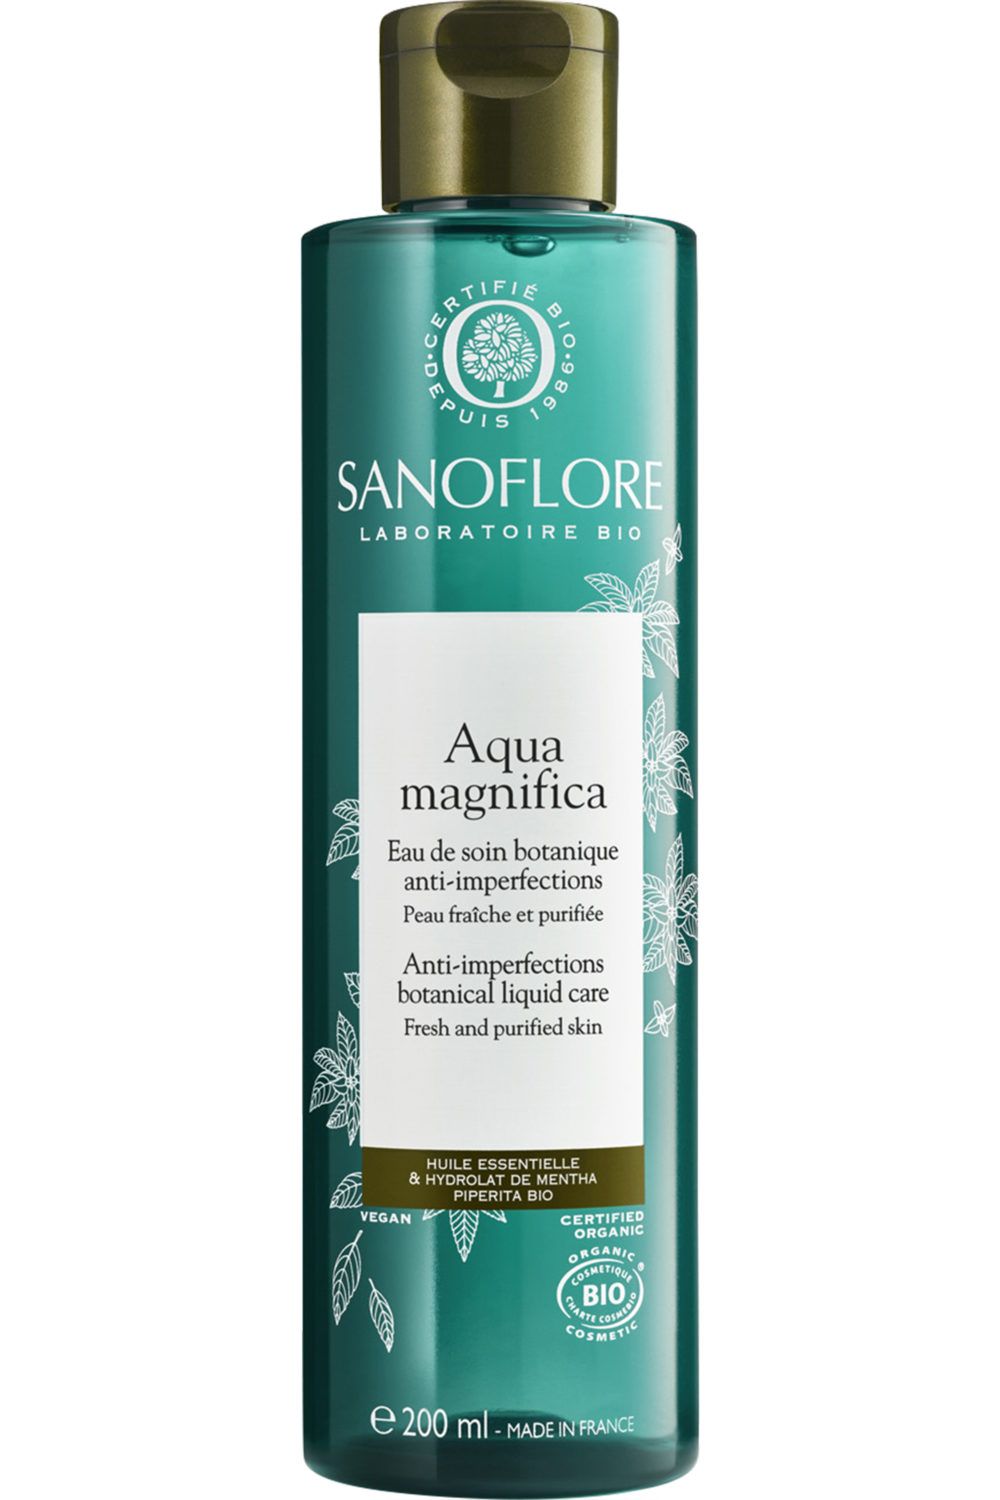 Sanoflore - Magnifica Aqua 200ml